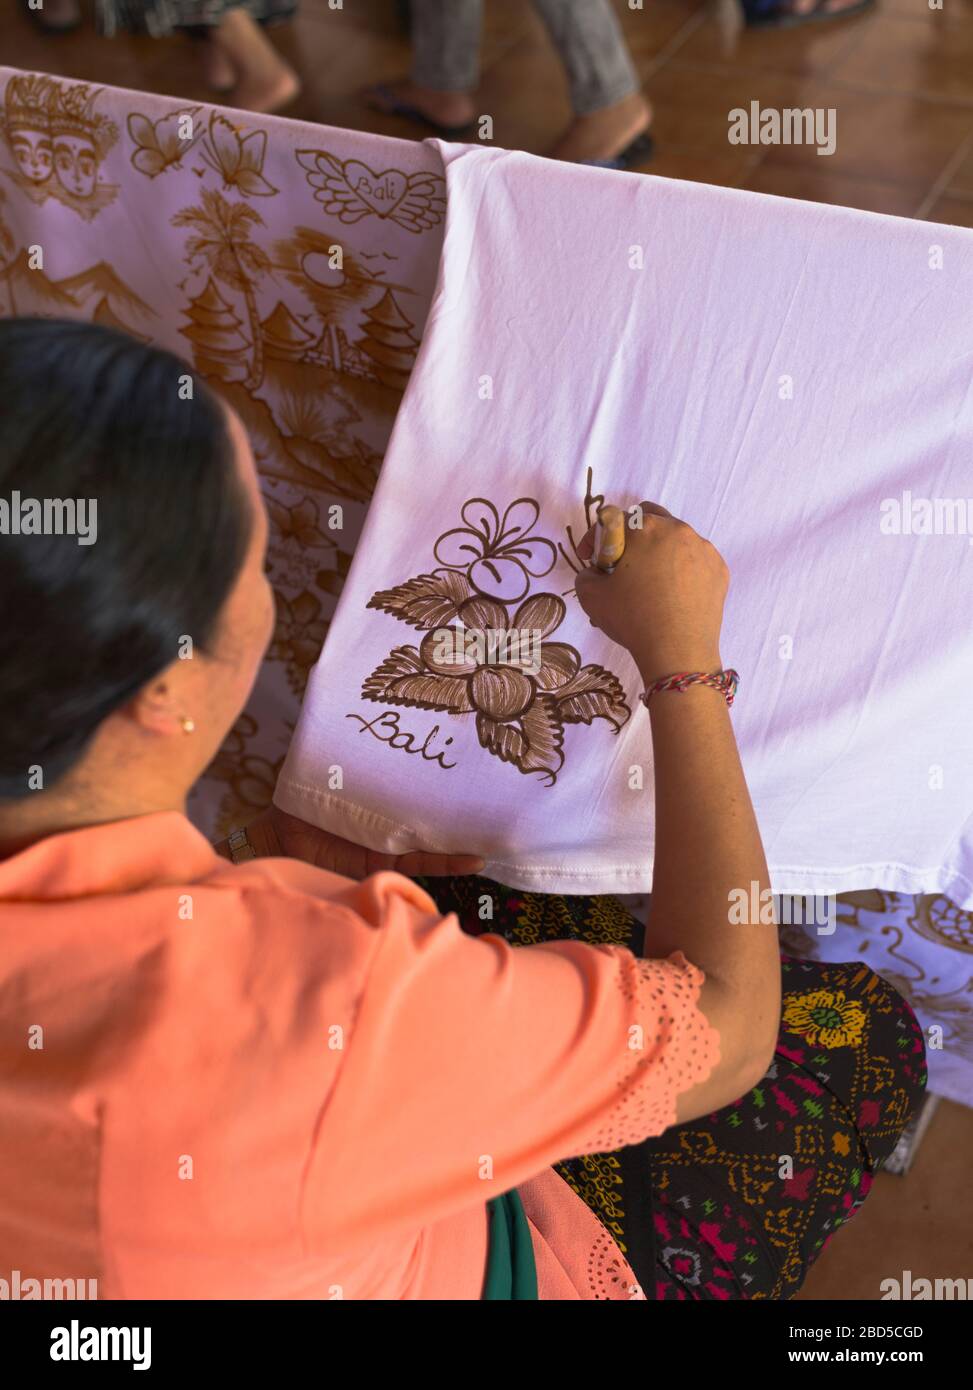 dh Balinese femme travailleuse batiks BALI INDONÉSIE peinture d'art Batik motif de cire chaude sur tissu femmes indonésiennes asie du sud design d'asie de l'est Banque D'Images